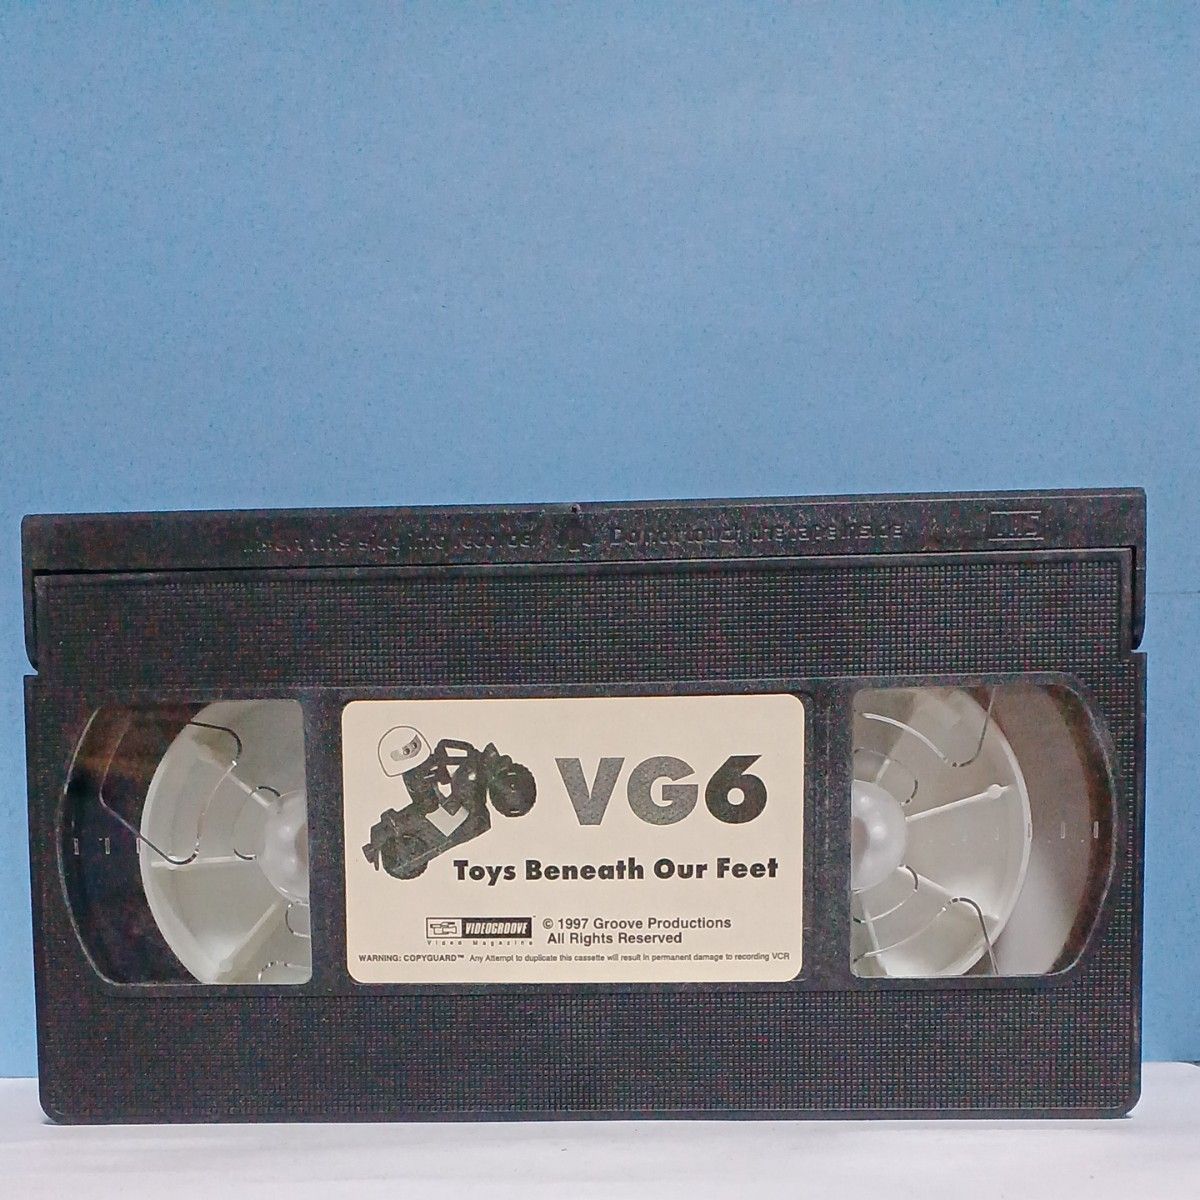 VHSビデオテープ